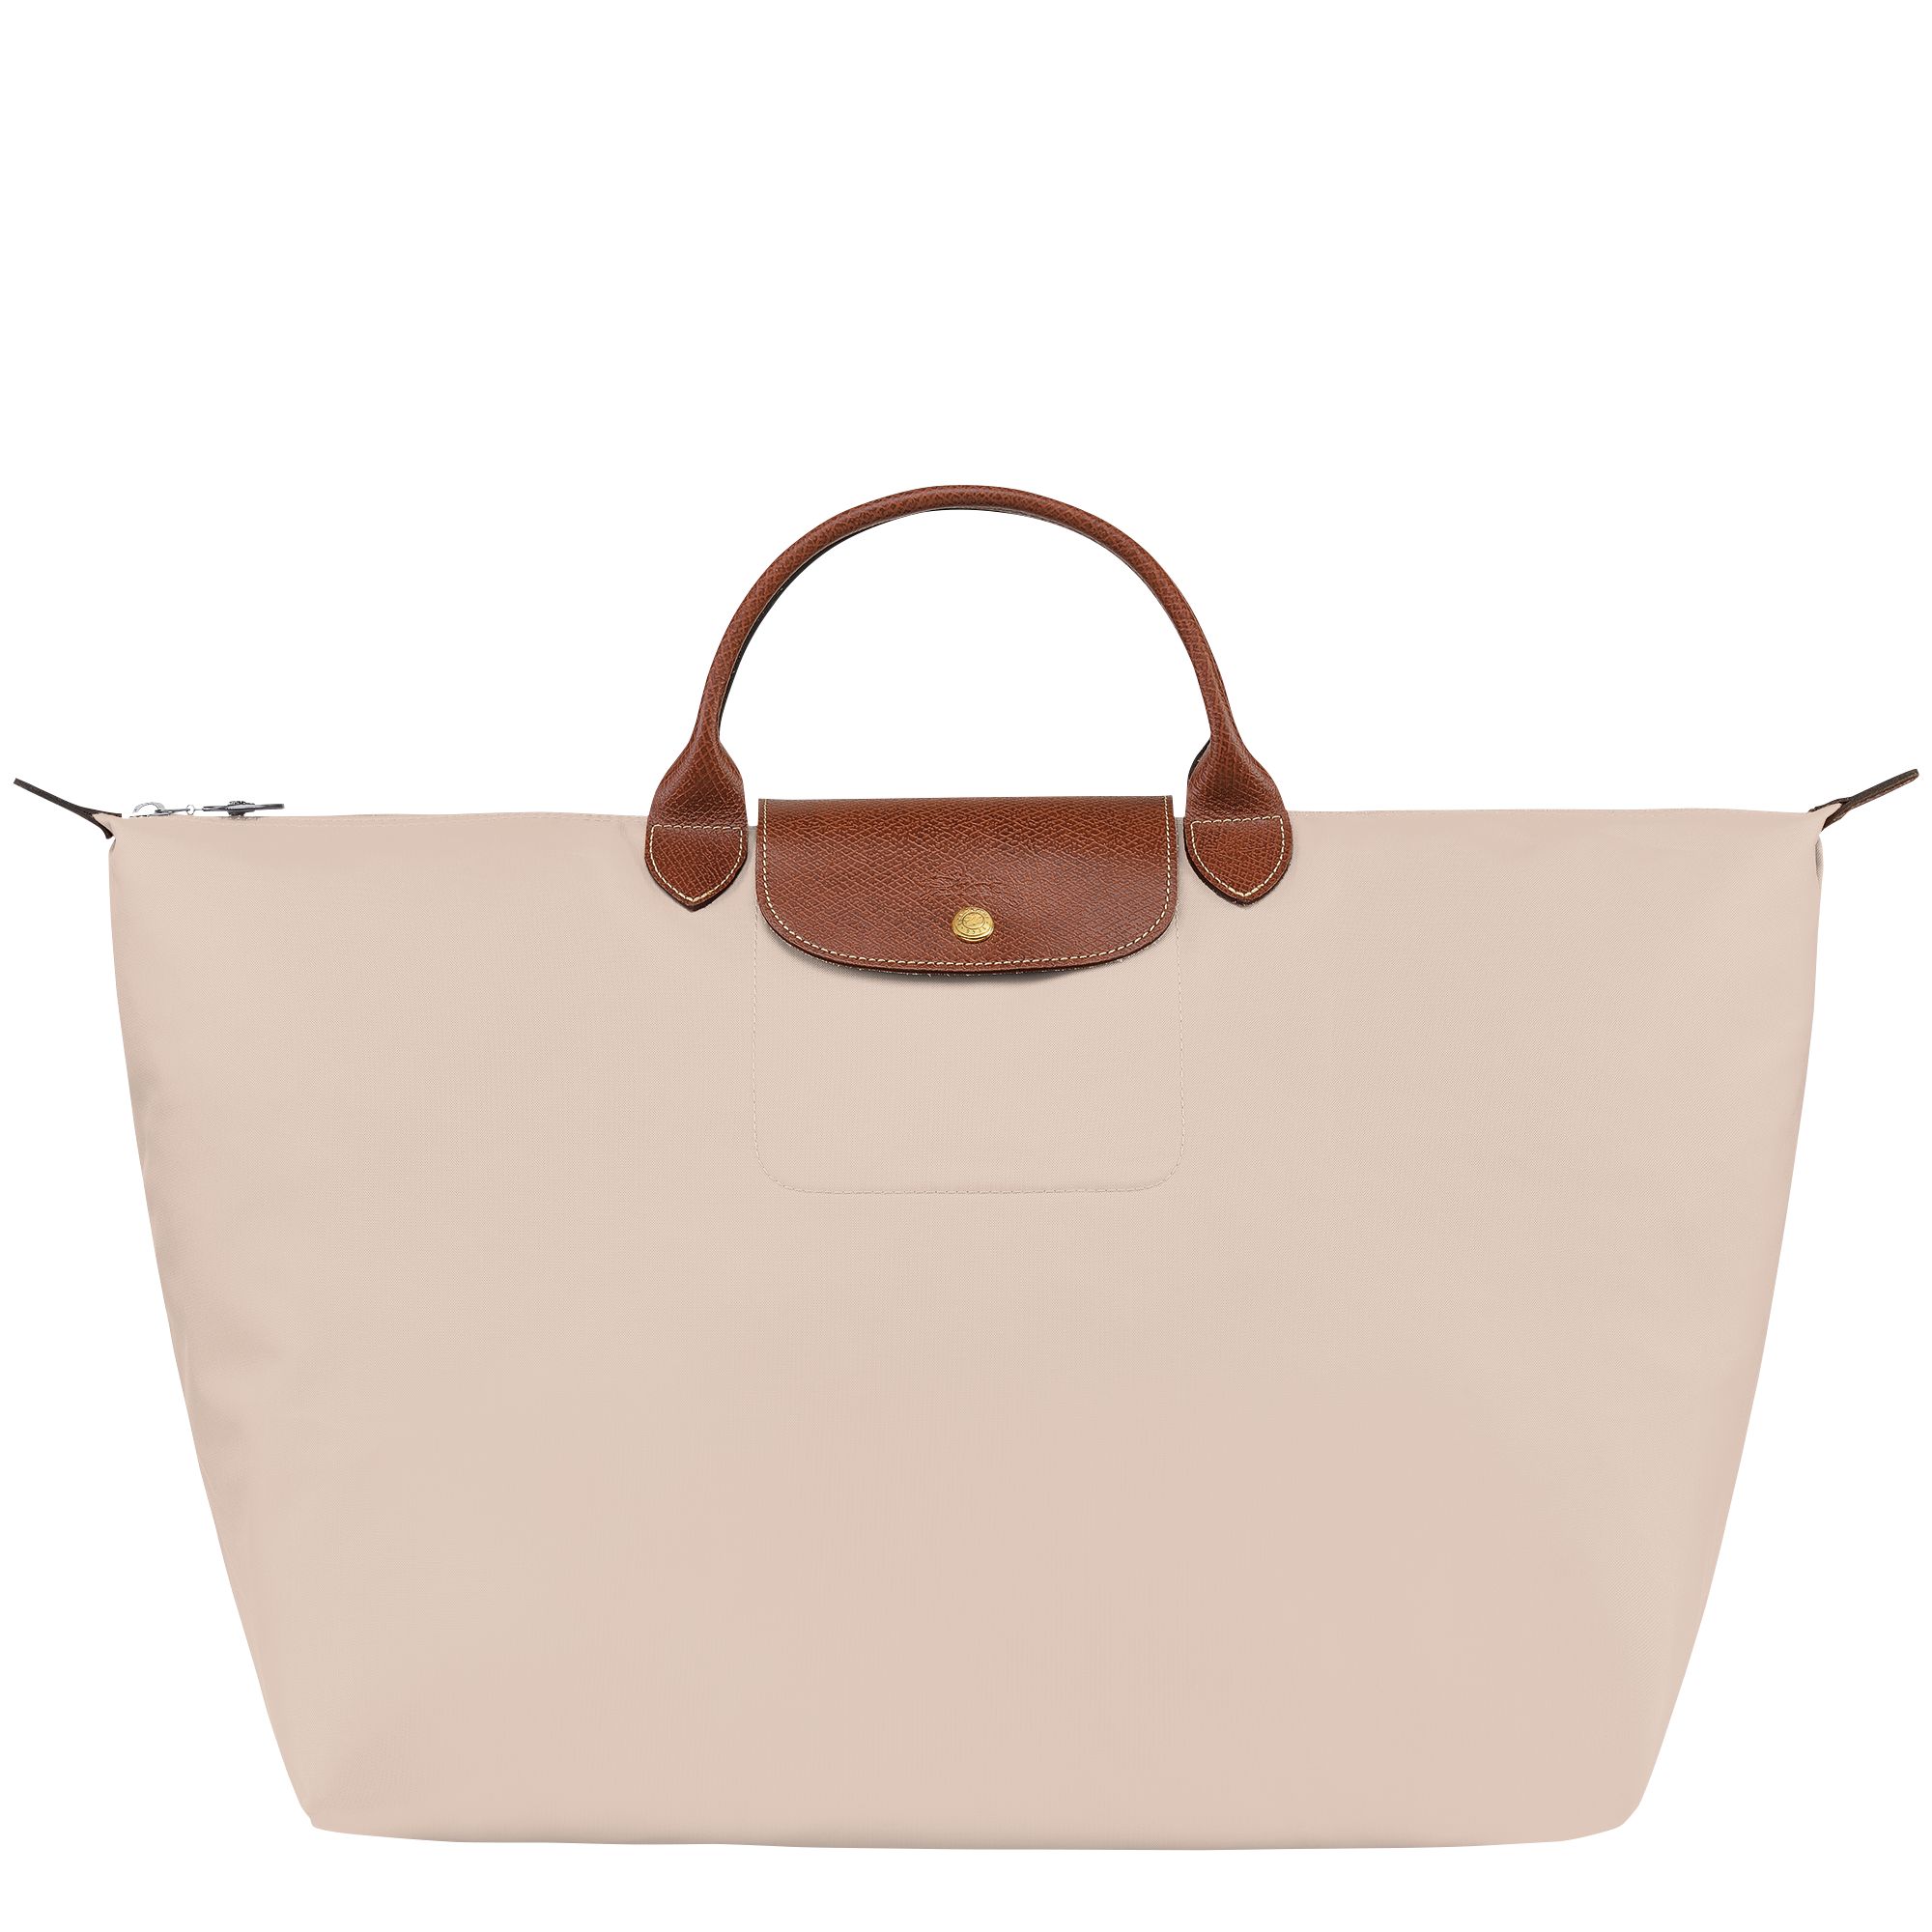 Le Pliage Original S Travel bag | Longchamp